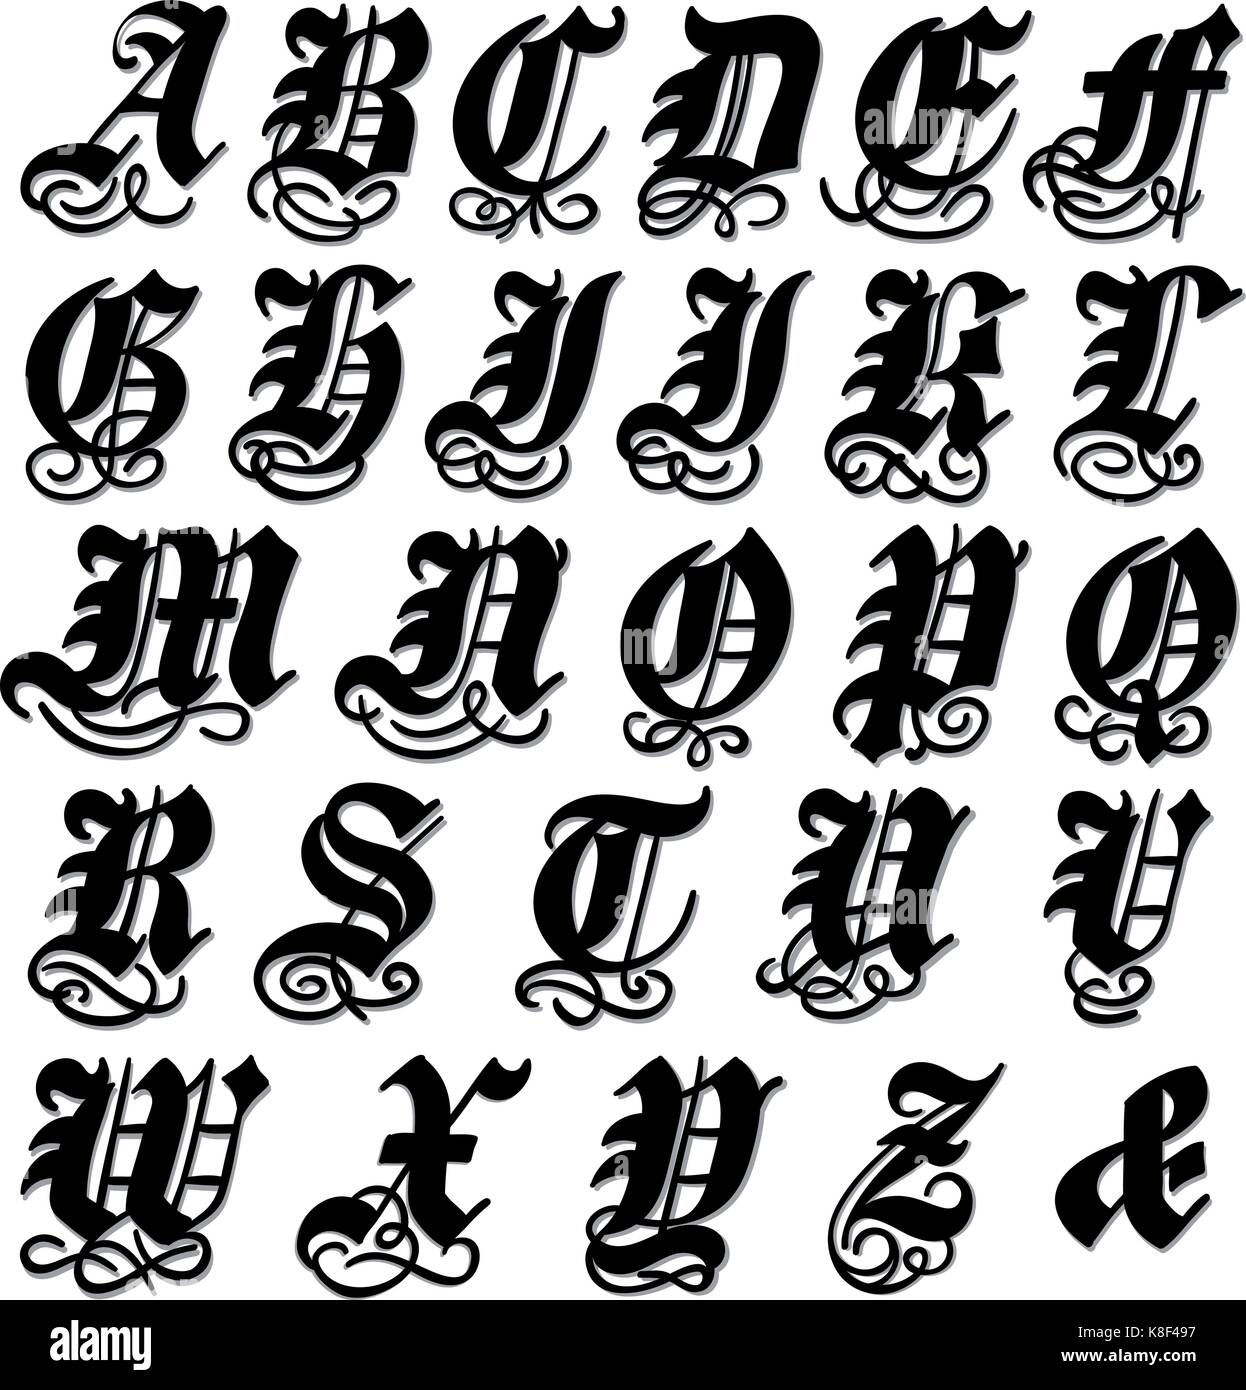 Majuscule complète dans un alphabet gothique noire doodle avec tourbillons et ornementales s'épanouit, vector illustration isolé sur fond blanc Illustration de Vecteur